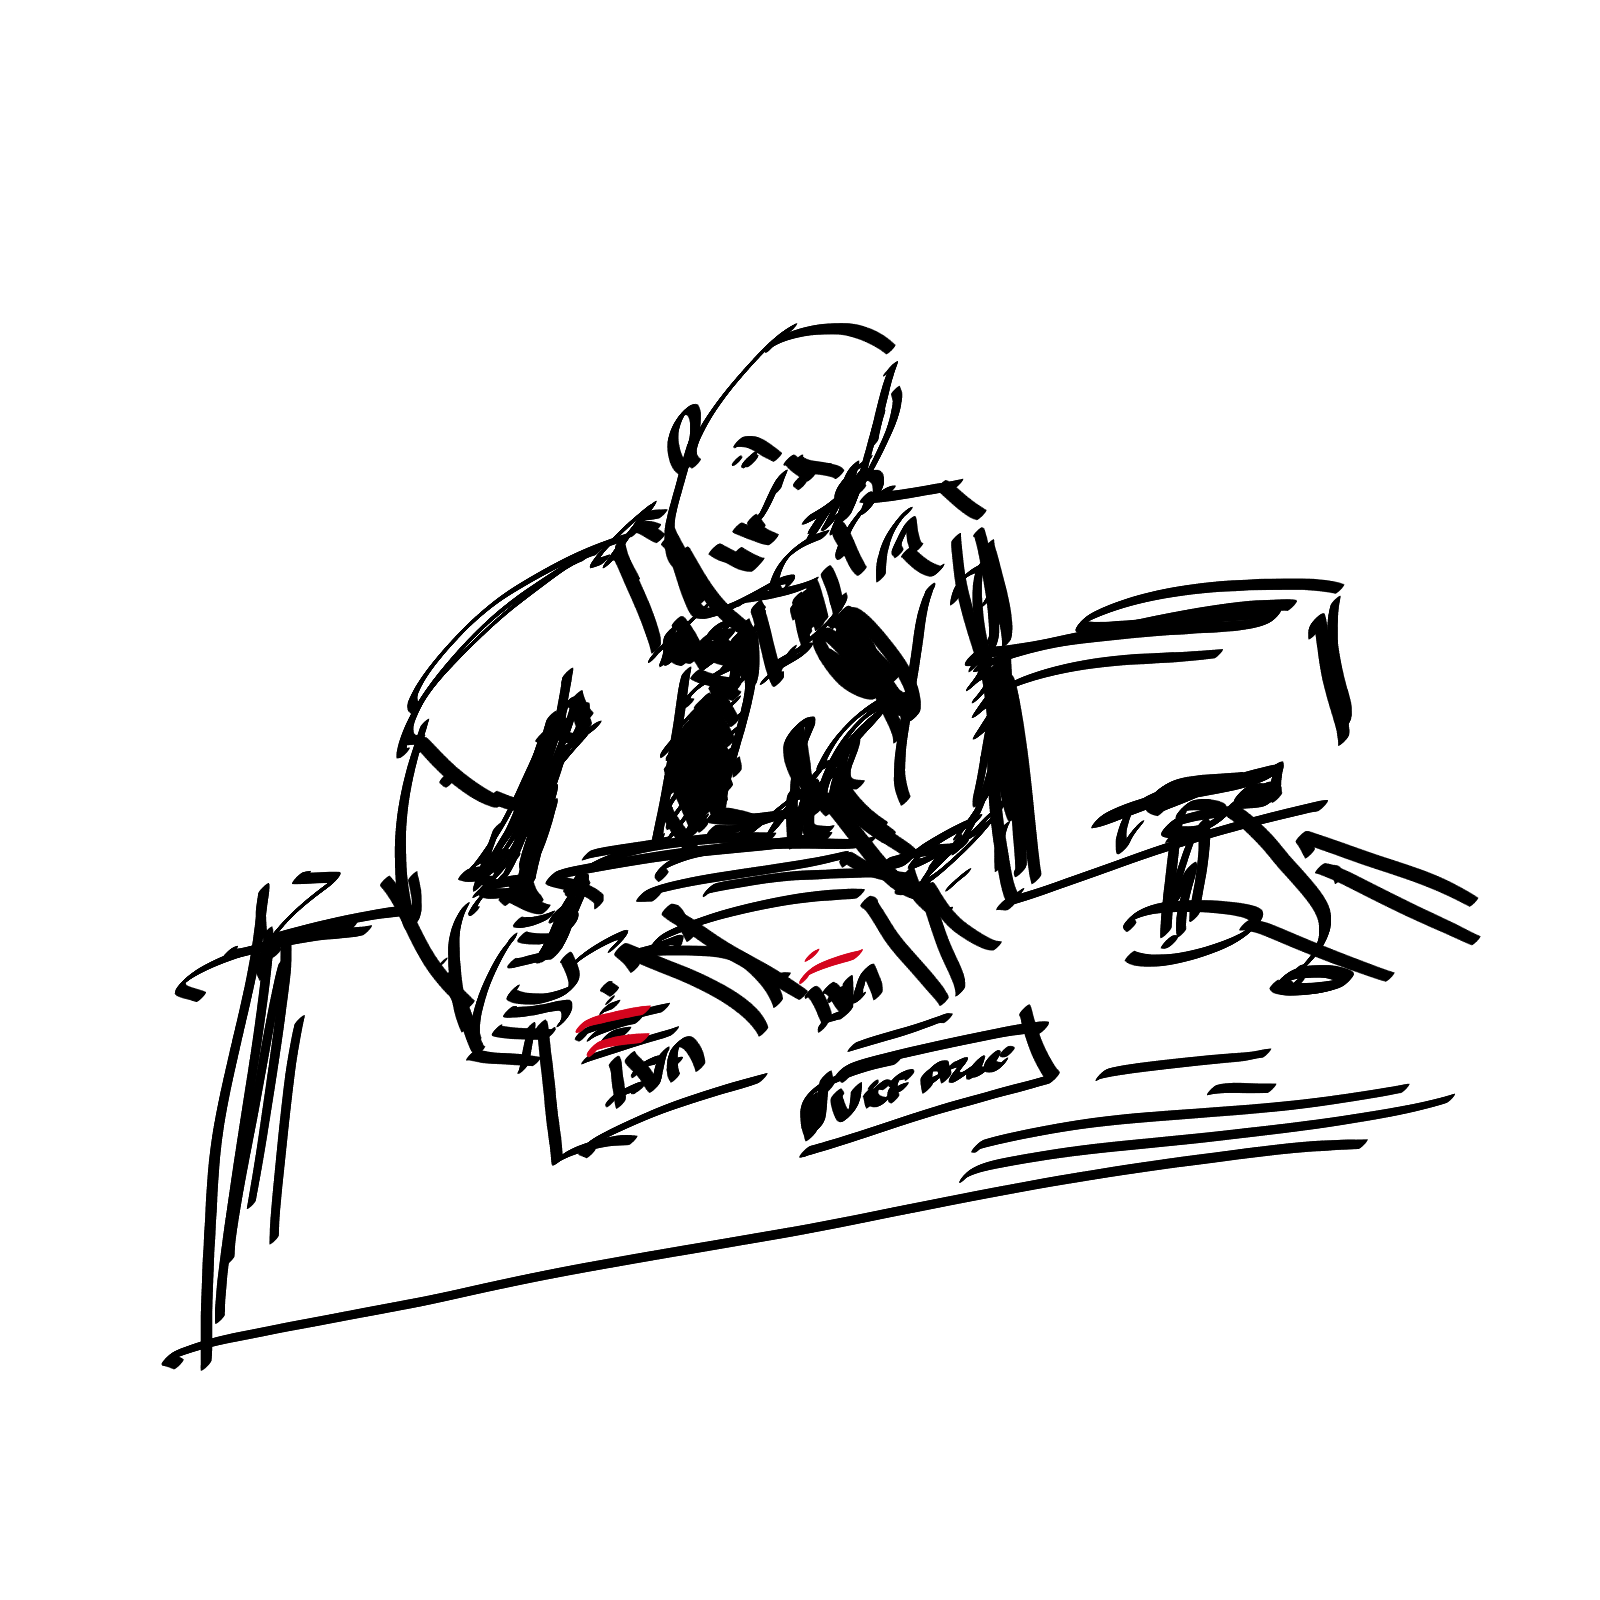 Członek zarządu przy biurku; czarno-biały rysunek